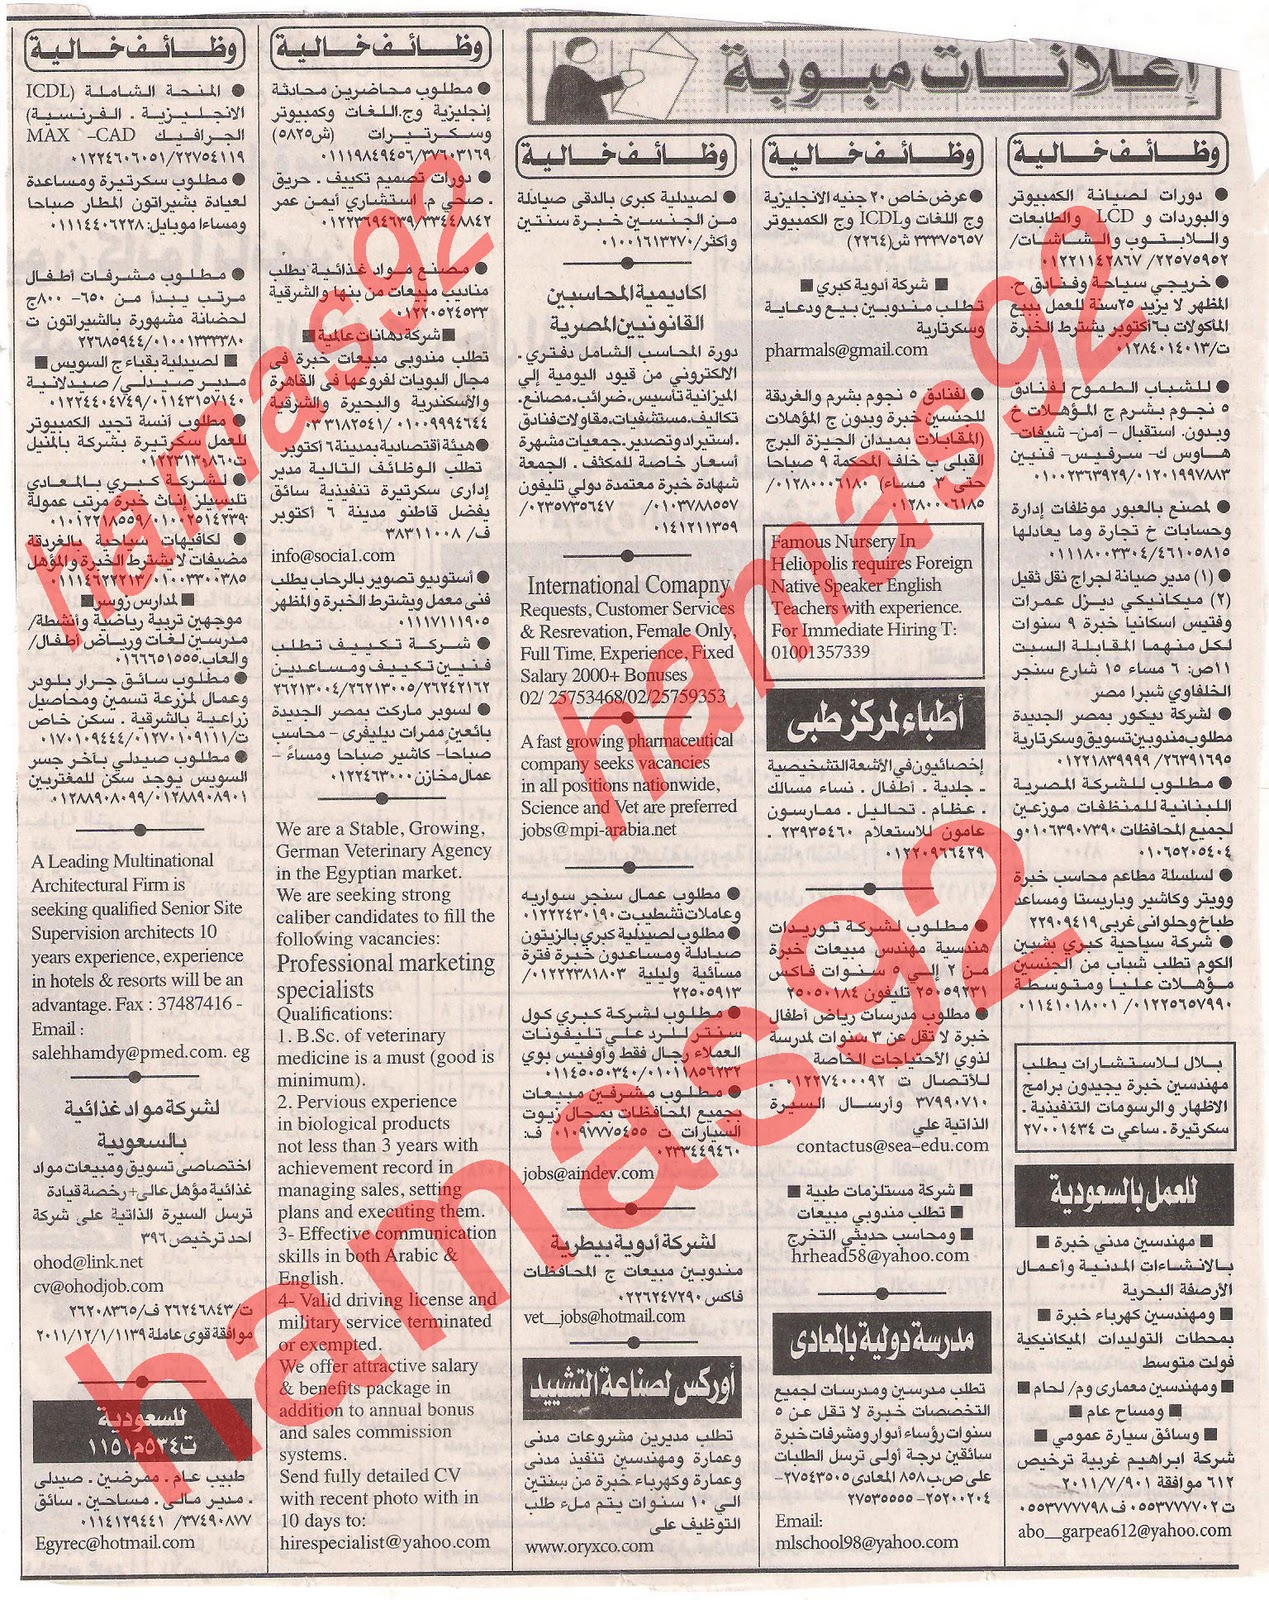 وظائف جريدة الاهرام الجمعة 9  ديسمبر 2011 , الجزء الاول , وظائف اهرام الجمعة 9\12\2011 Picture+008